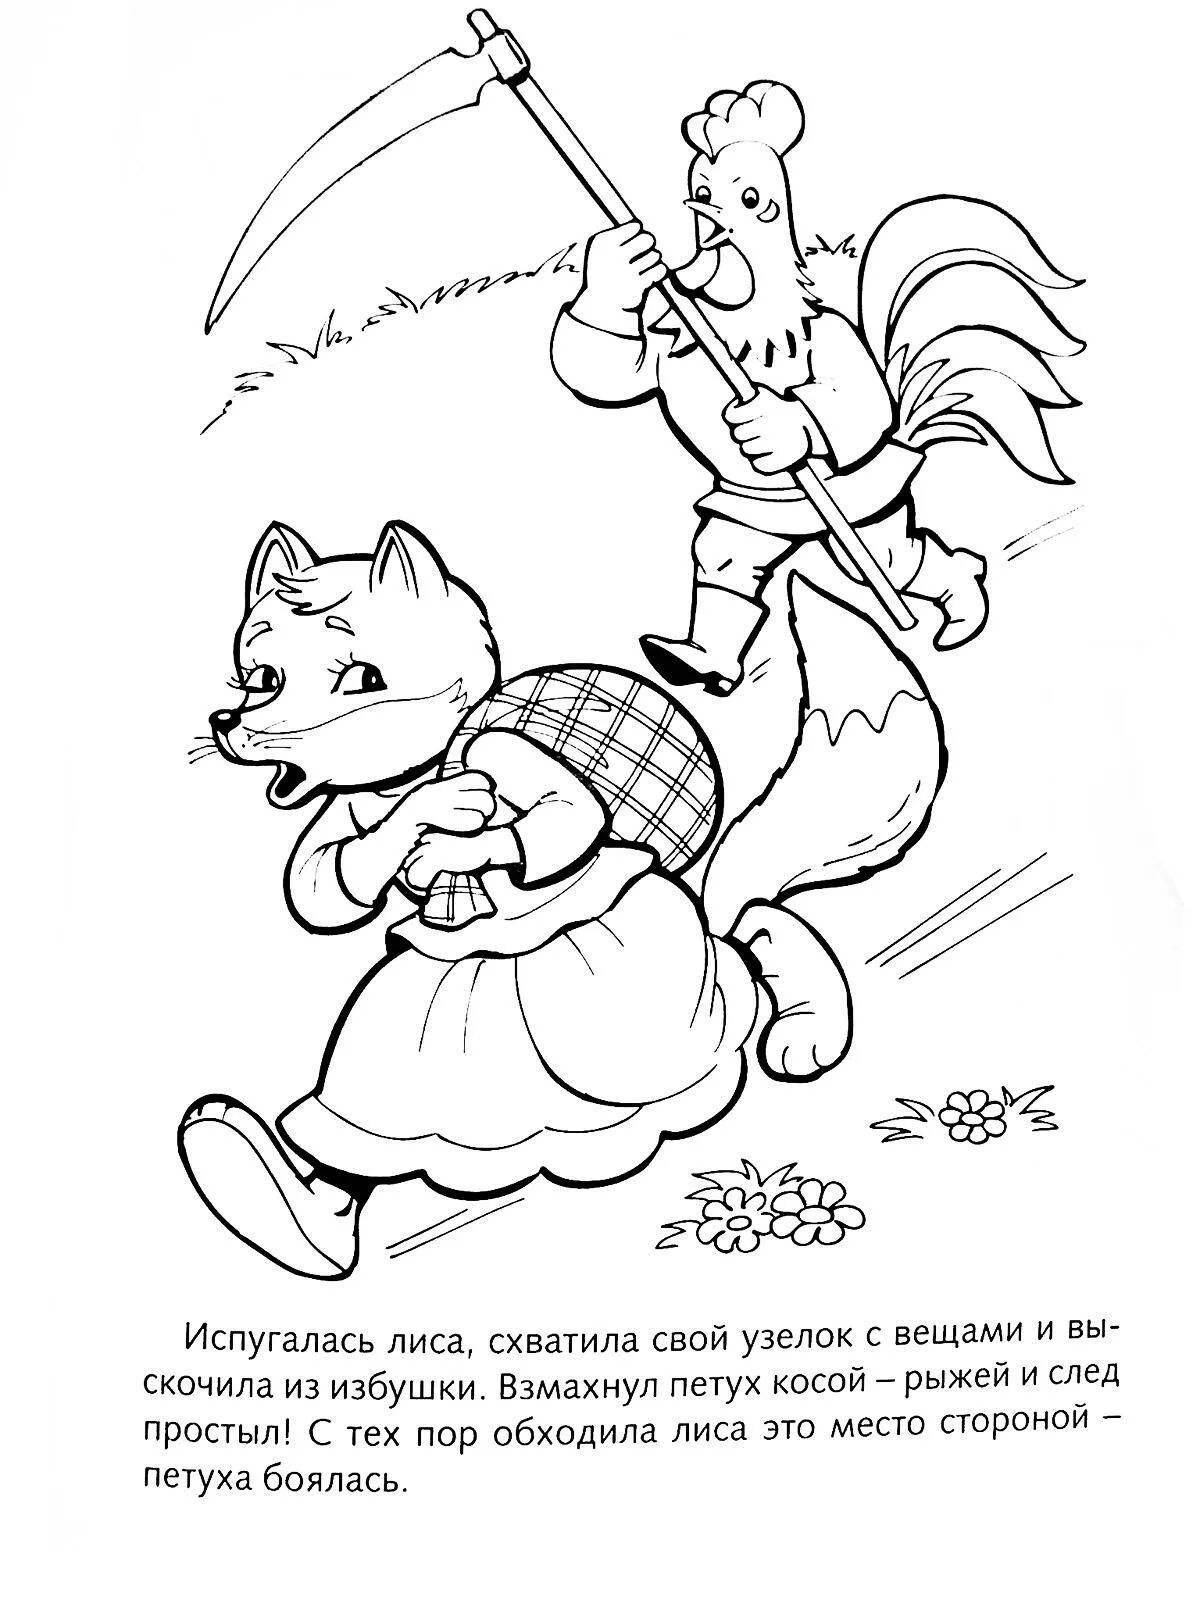 Славная раскраска лиса и петух русская народная сказка